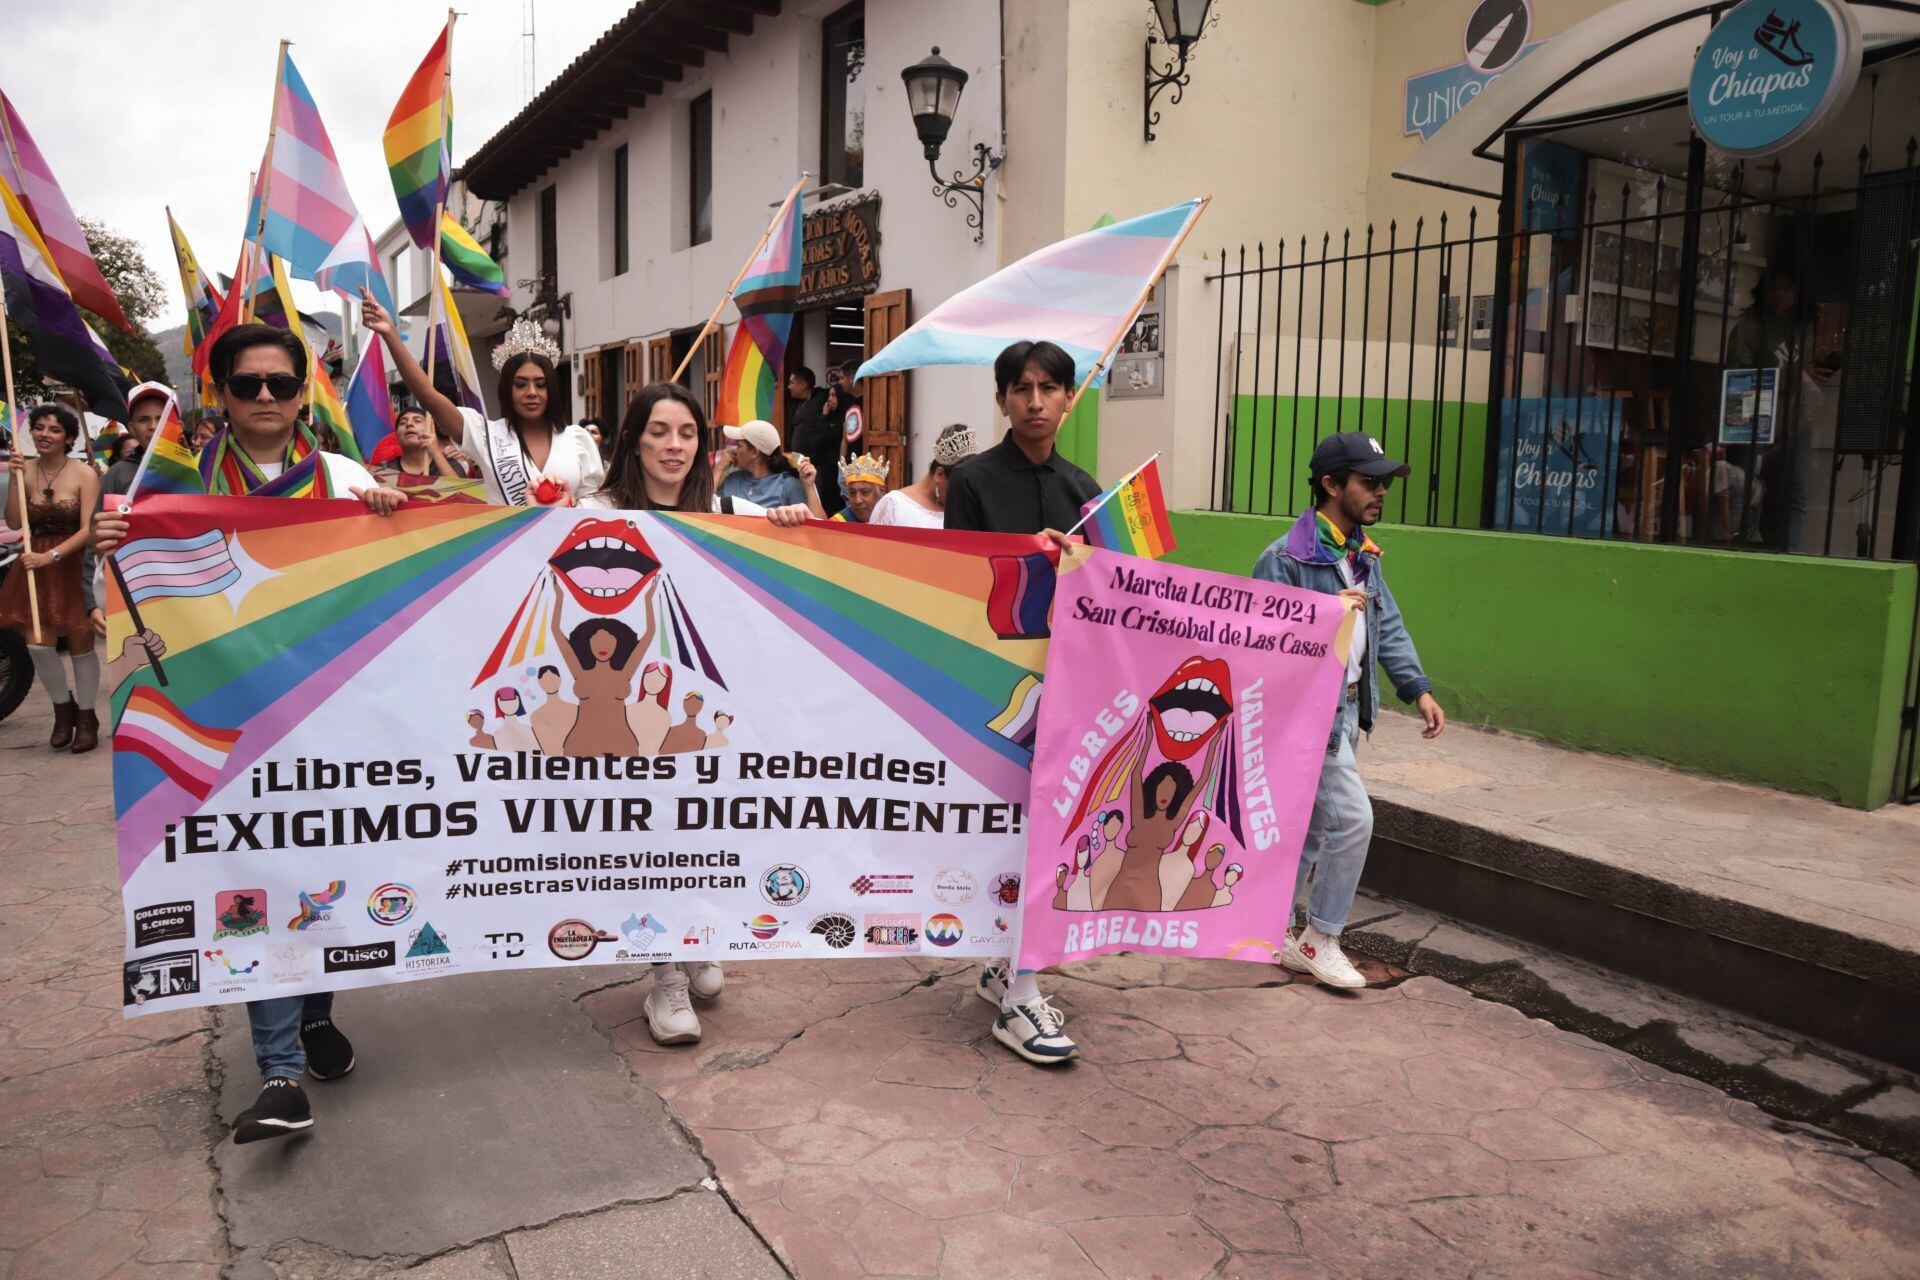 Manifestación LGBT+ en San Cristóbal de las Casas, Chiapas, donde se exige el acceso a una vida digna.